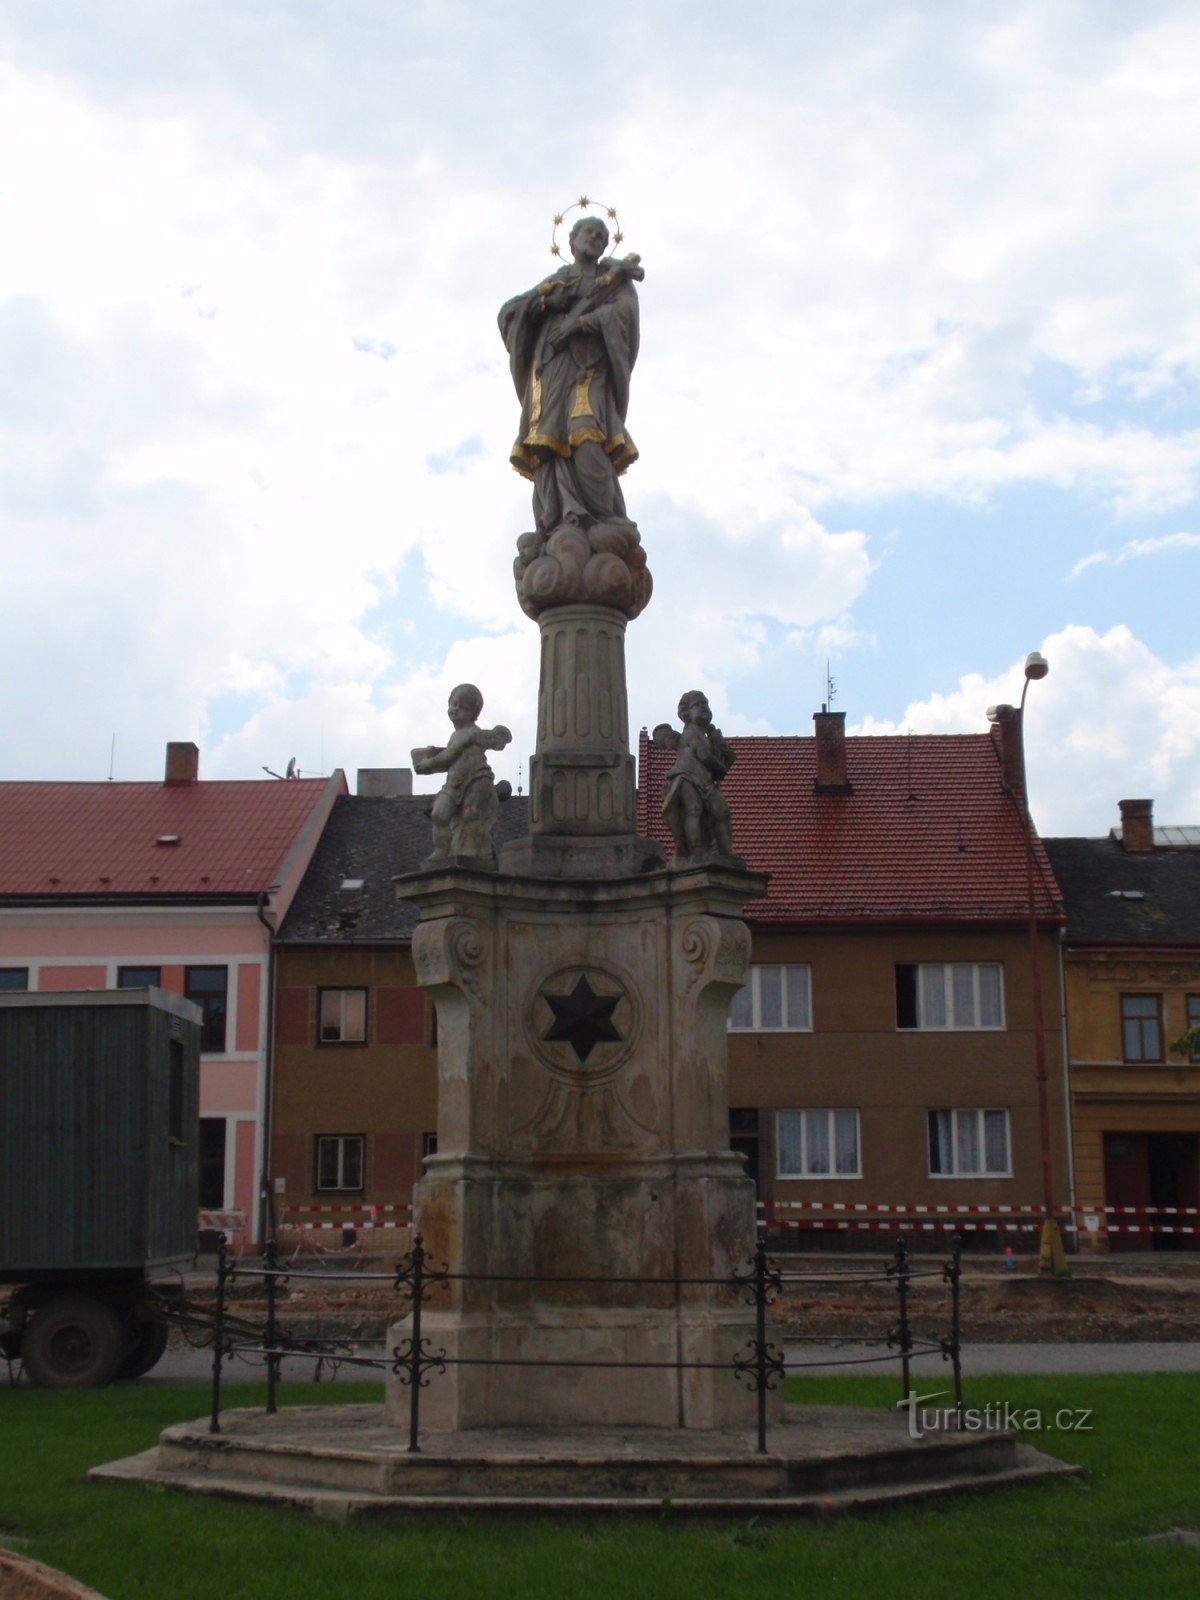 Sculpturi baroc în Jevíček